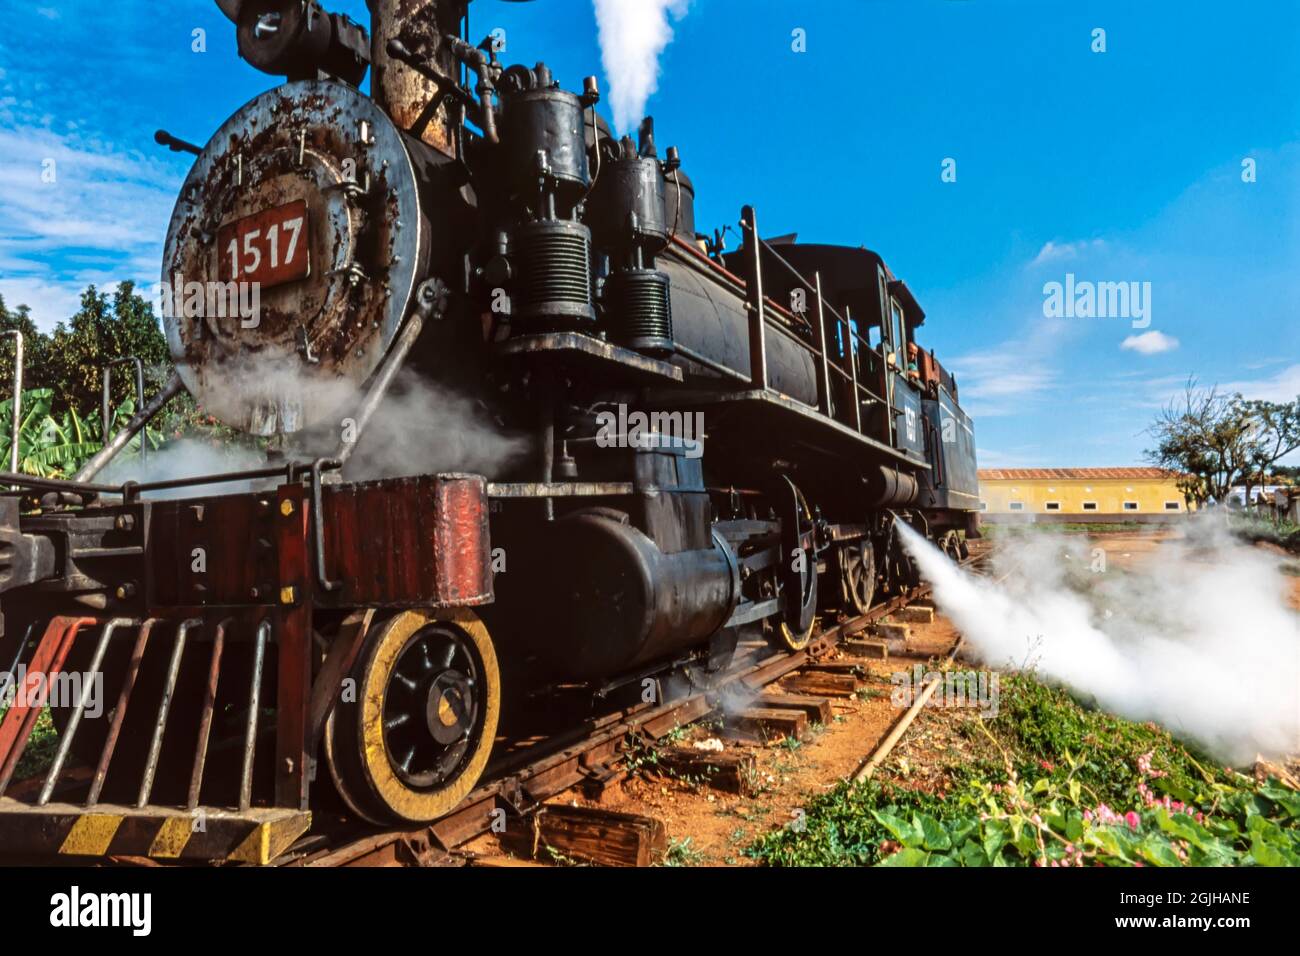 Locomotive à vapeur sur les voies entre Tinidad et Valle de los Ingenios, Trinidad, Cuba Banque D'Images